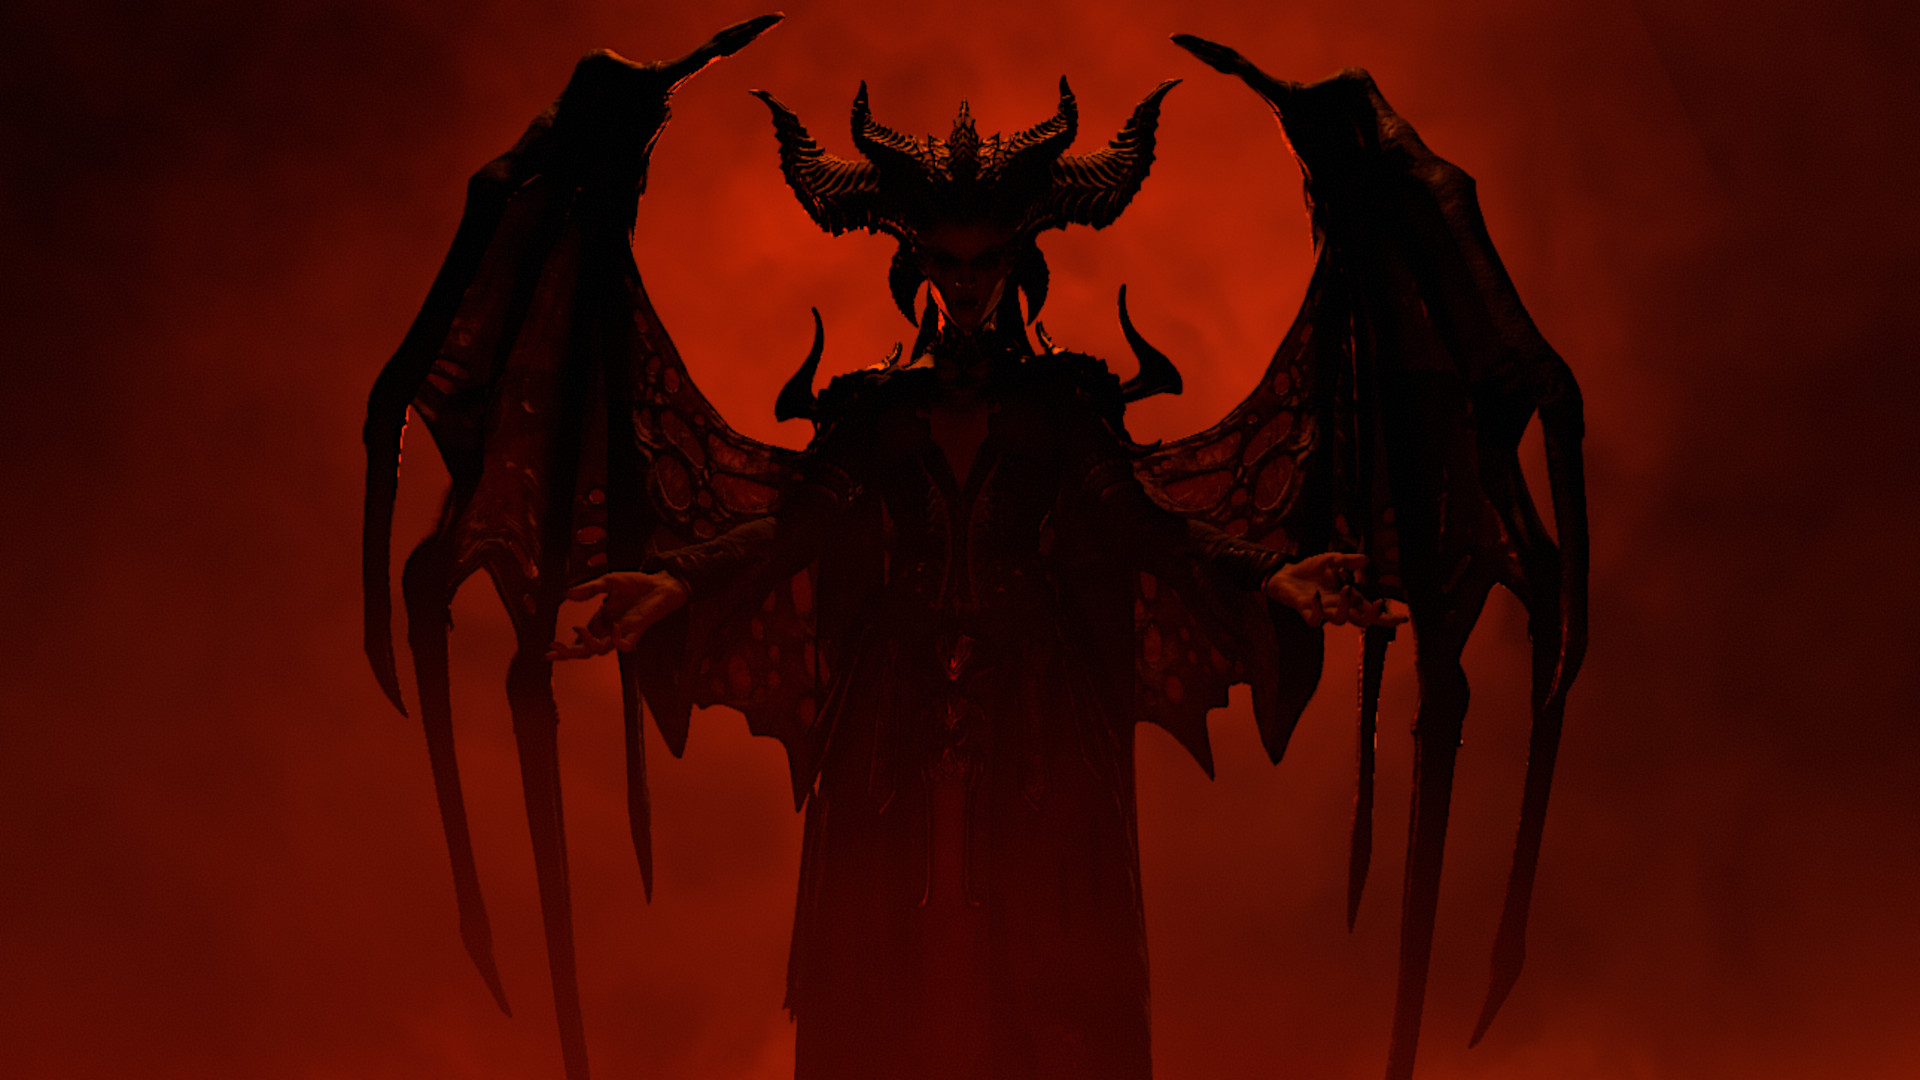 La mejor configuración de Diablo 4: la silueta de Lilith contrasta fuertemente con un fondo rojo sangre